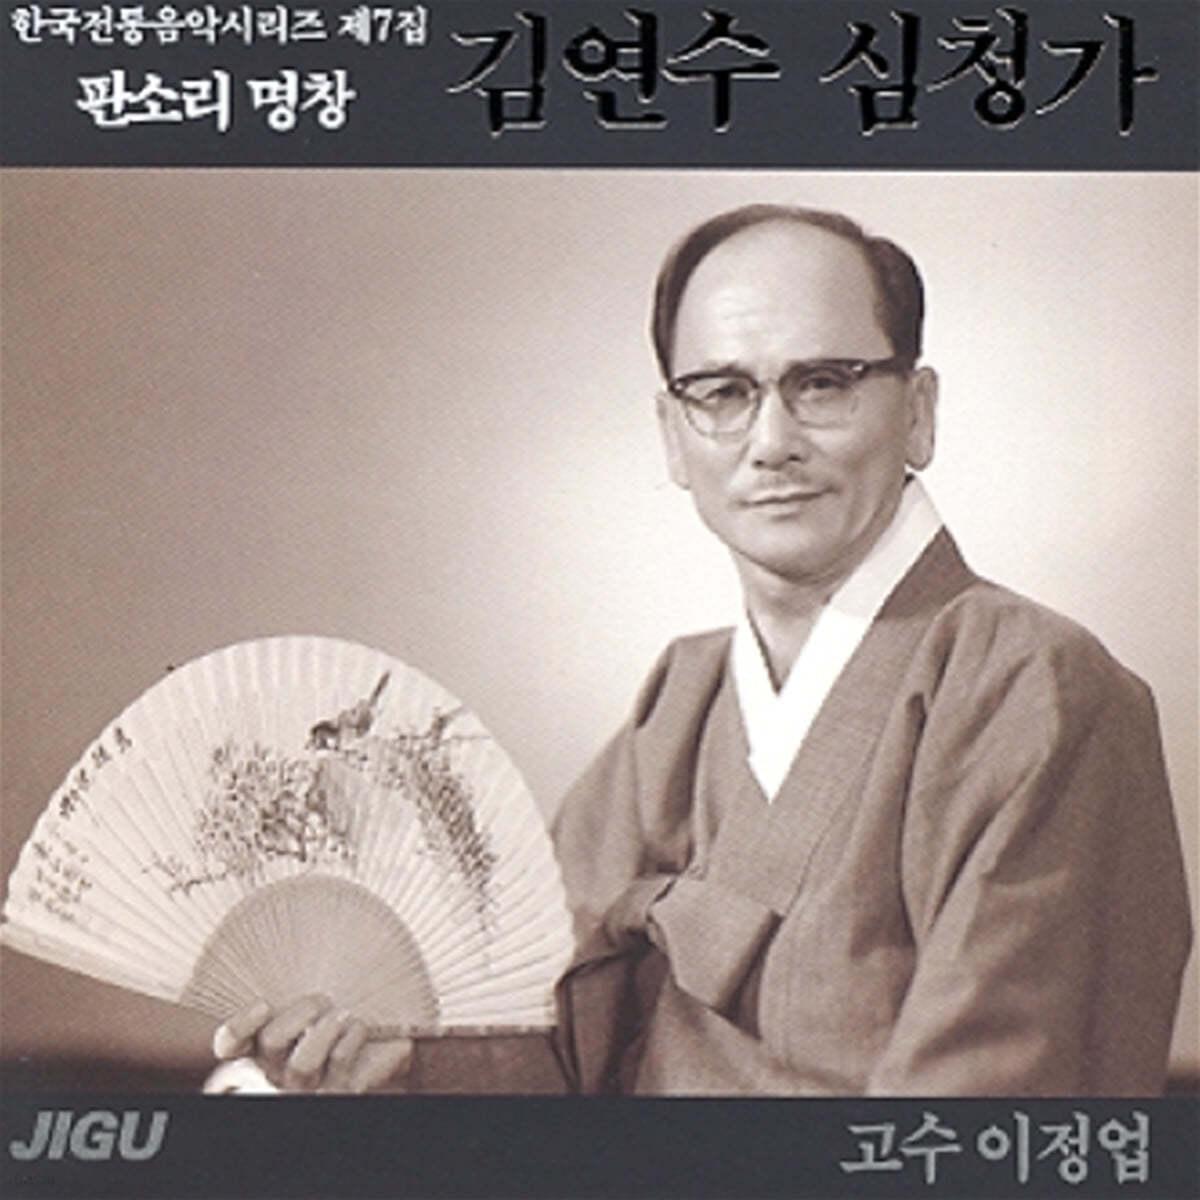 김연수 - 심청가 / 판소리 명창